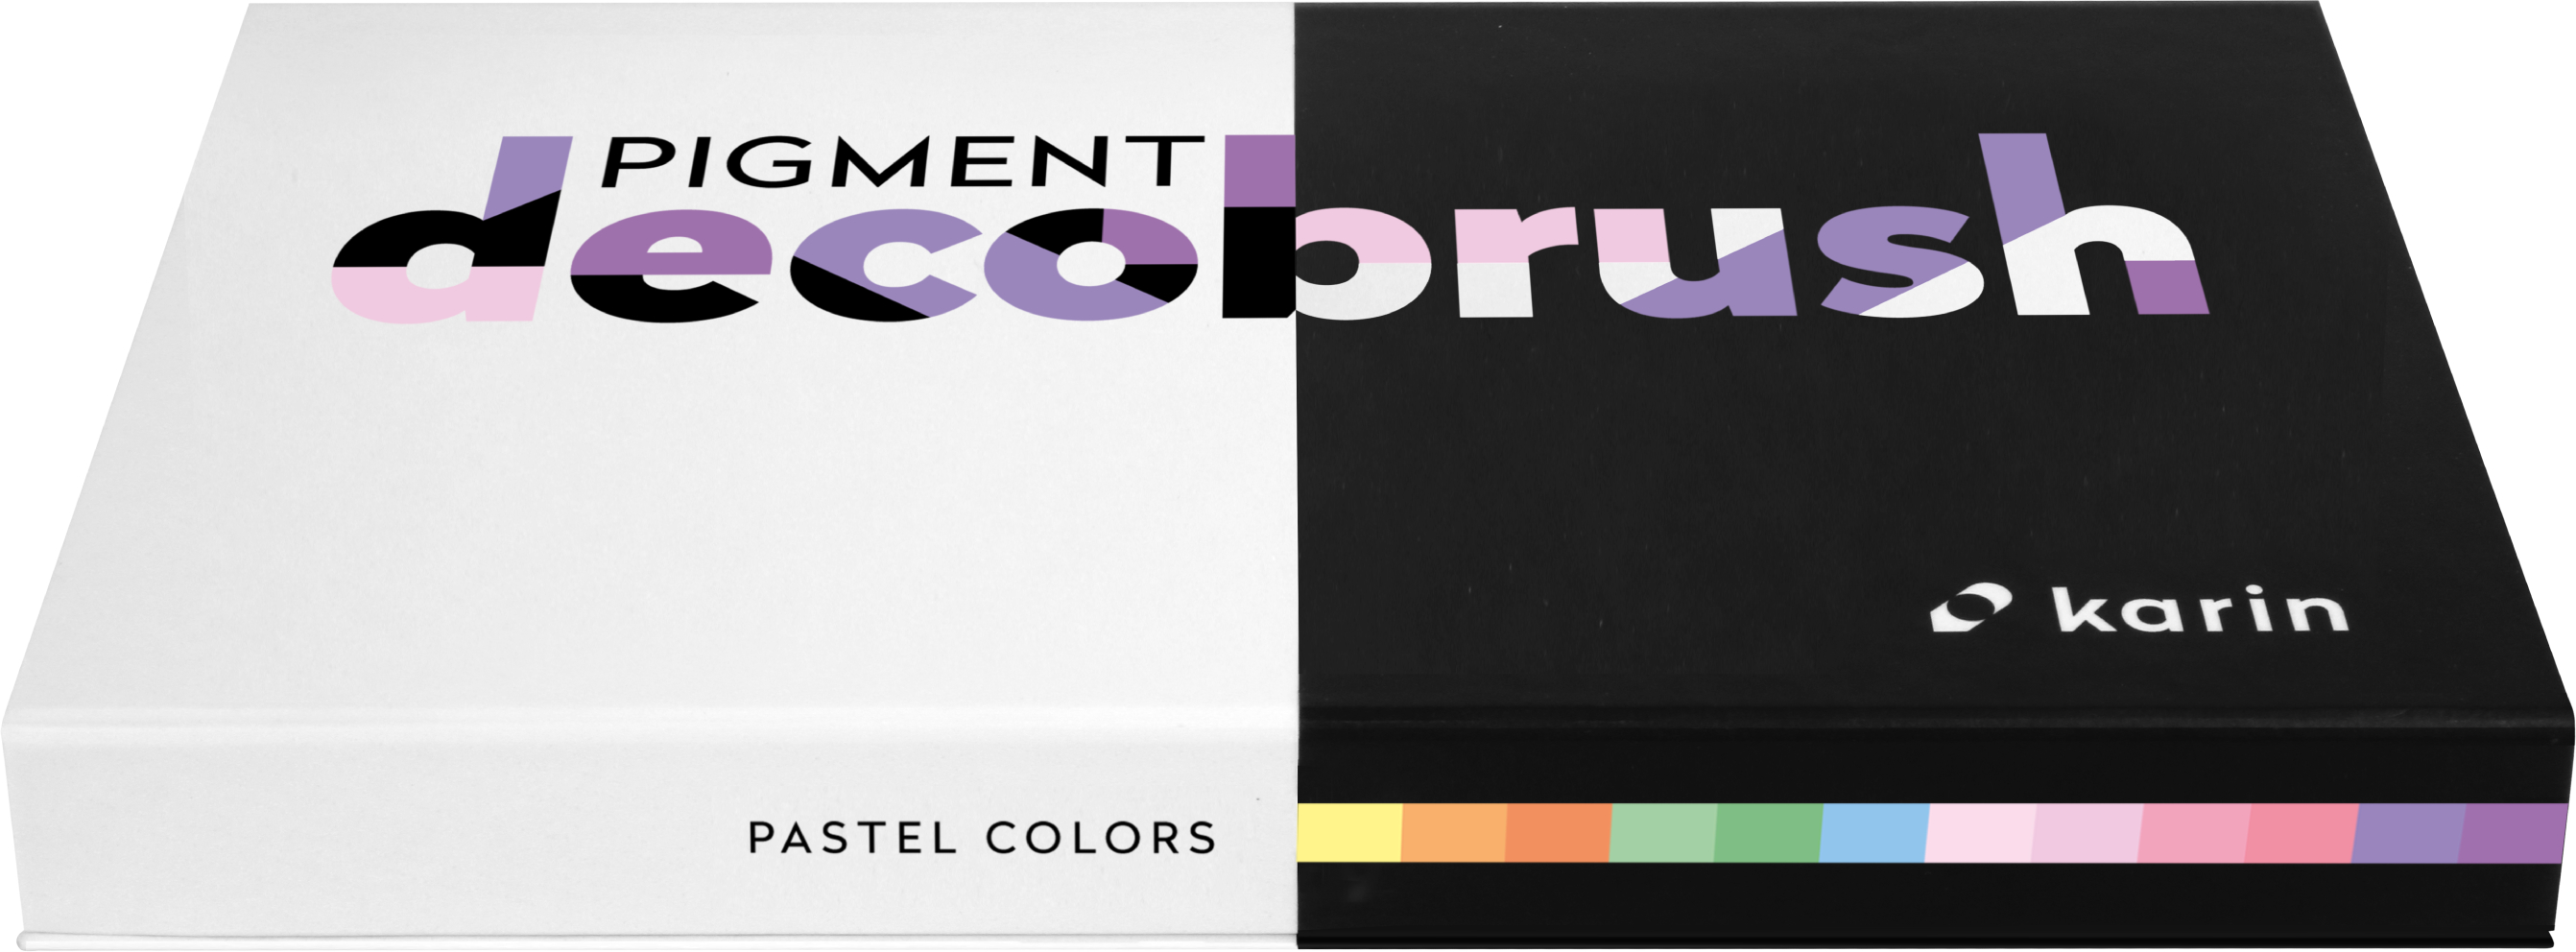 KARIN Pigment Deco Brush 29C7 Pastel Colors Set 12 couleurs